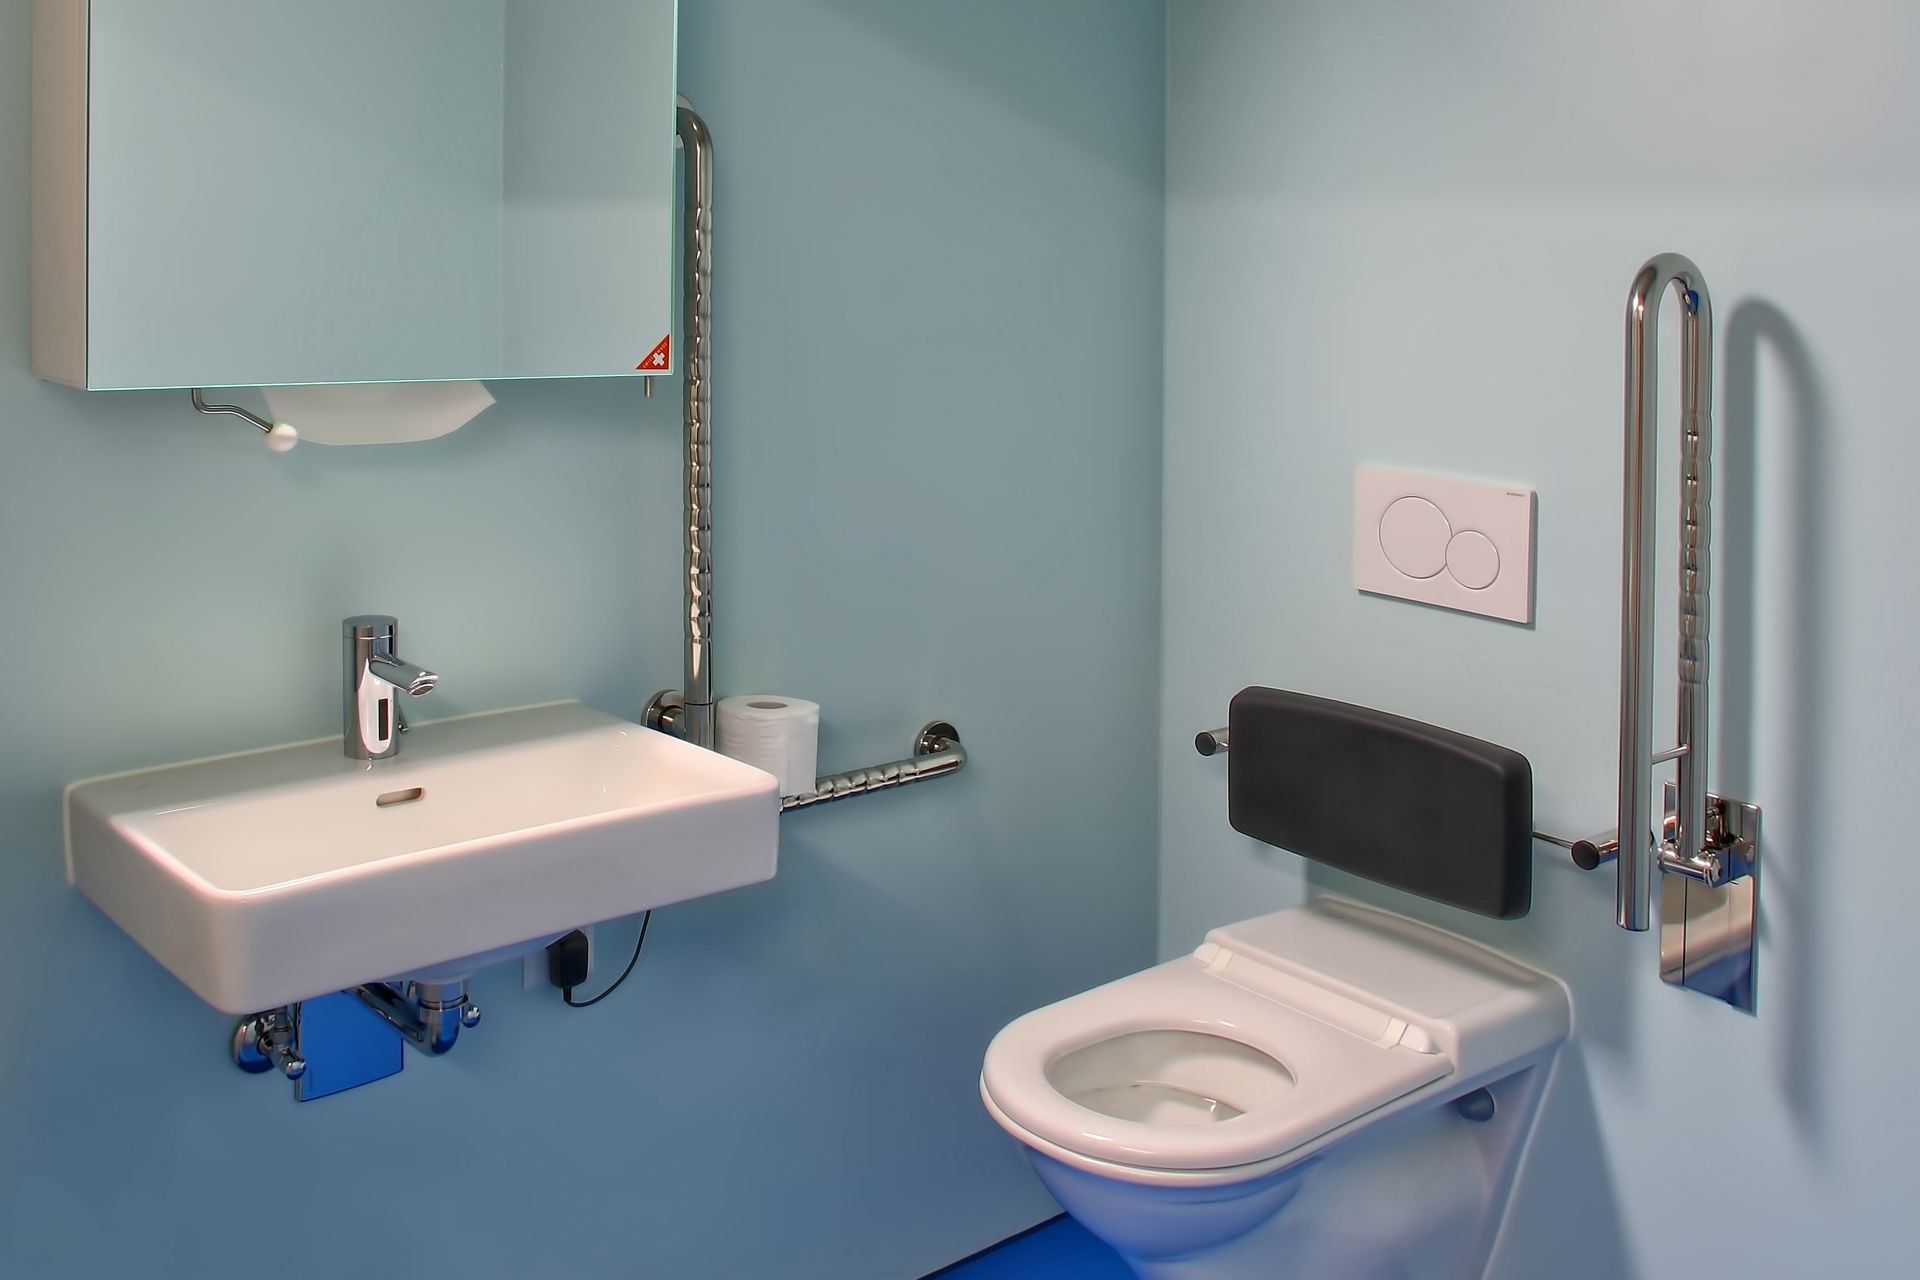 浴室内采用西卡舒适地板系统制成的蓝色地板